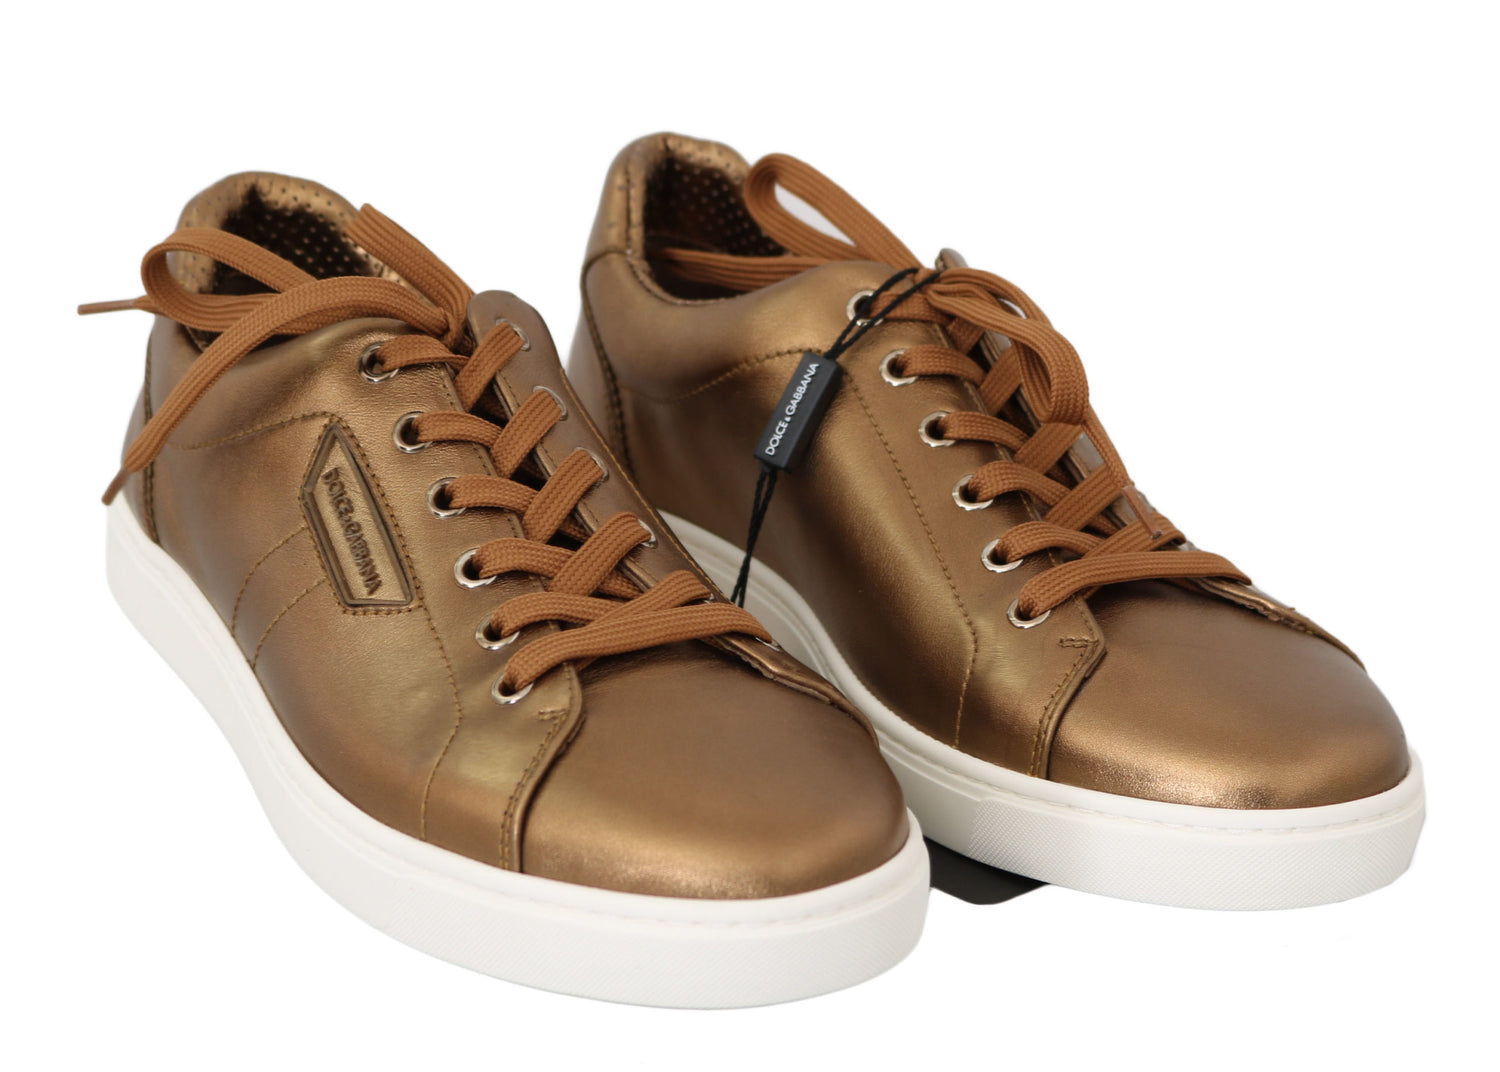 Dolce & Gabbana Gold Leather Mens Casual Sneakers - DEA STILOSA MILANO